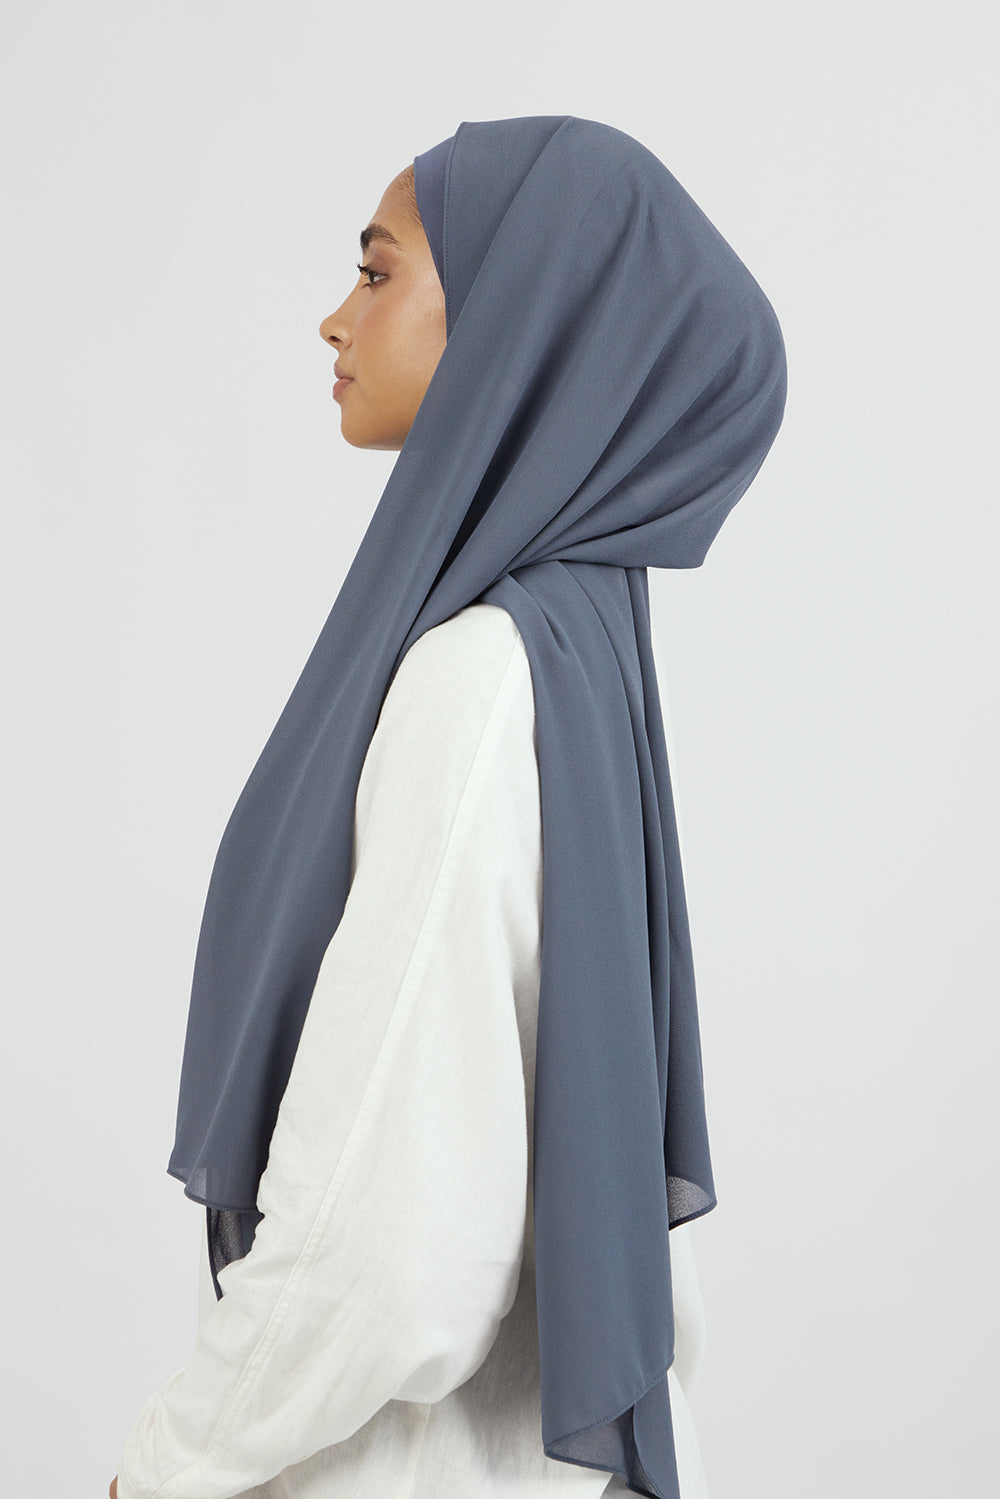 AE - Matching Chiffon Hijab Set - Denim